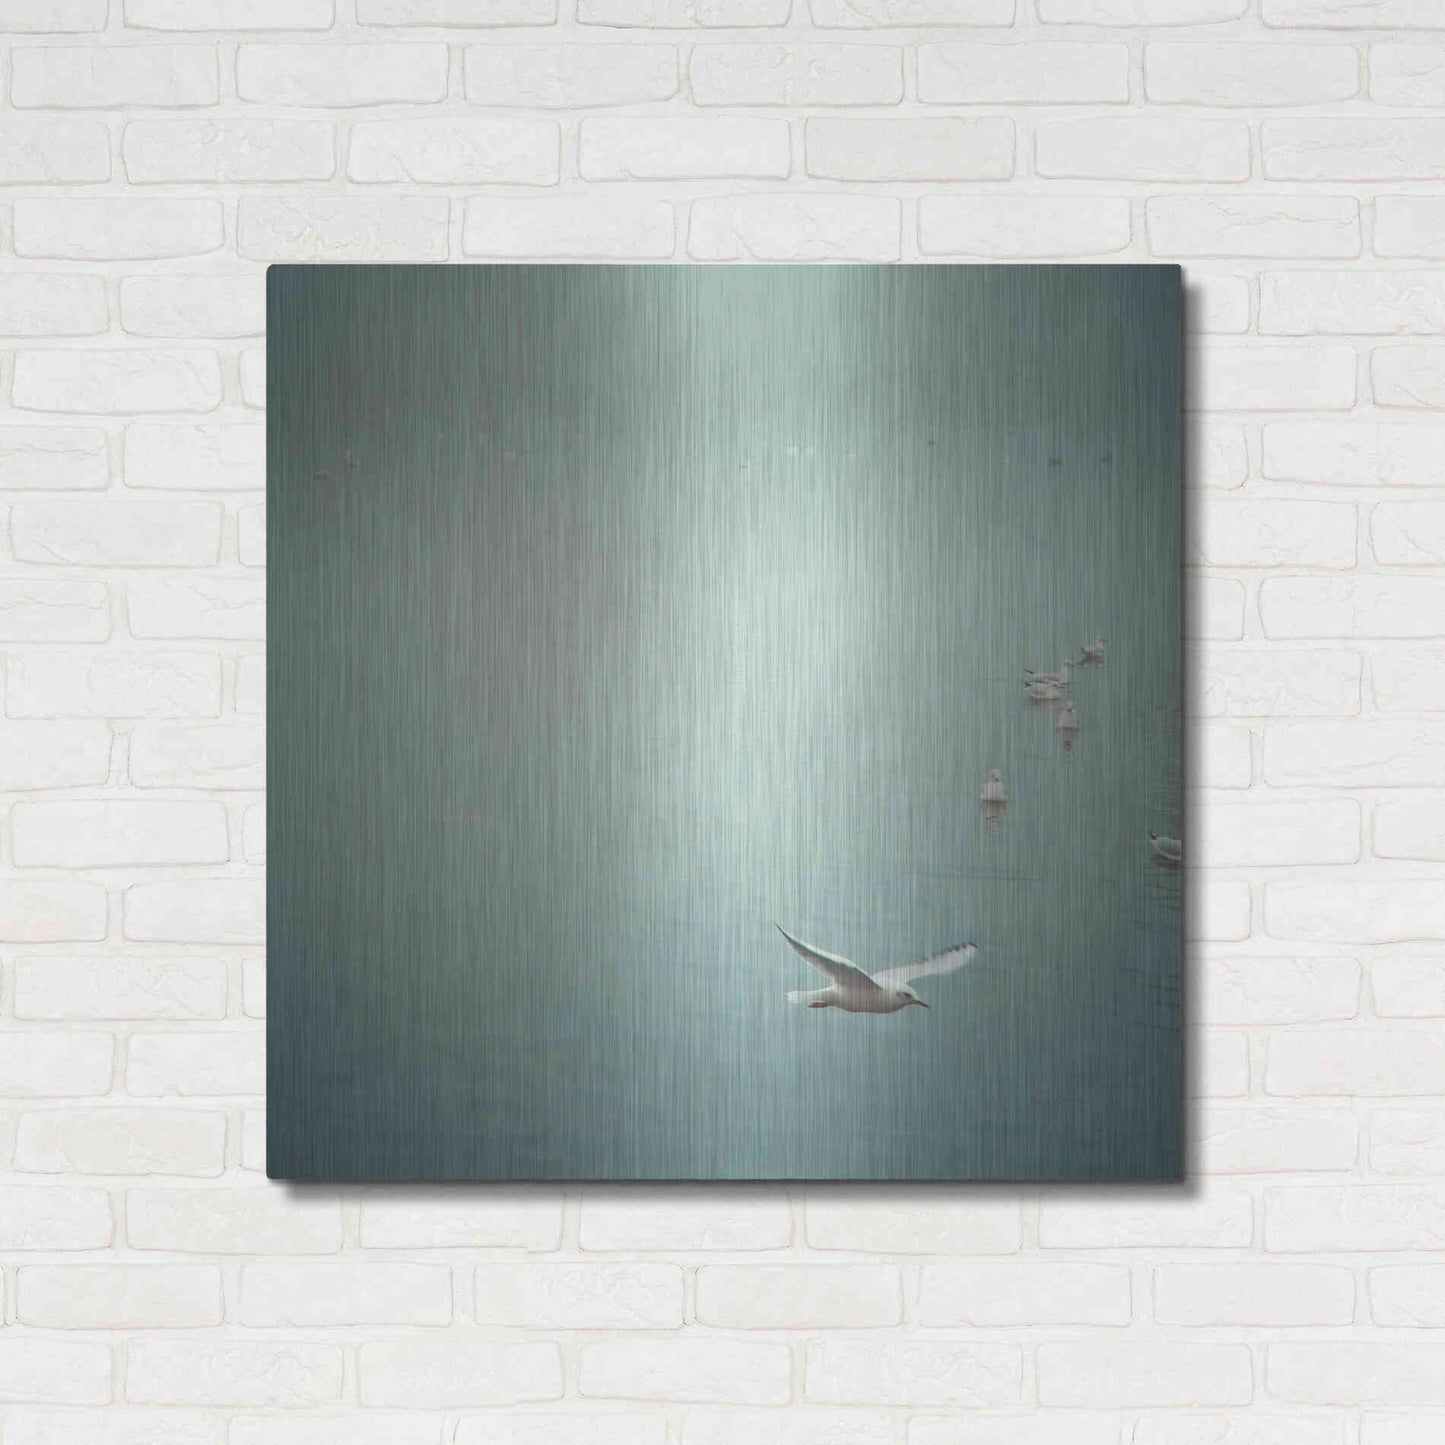 Luxe Metal Art 'Soul Birds Harbor Gray' by Keri Bevan, Metal Wall Art,36x36